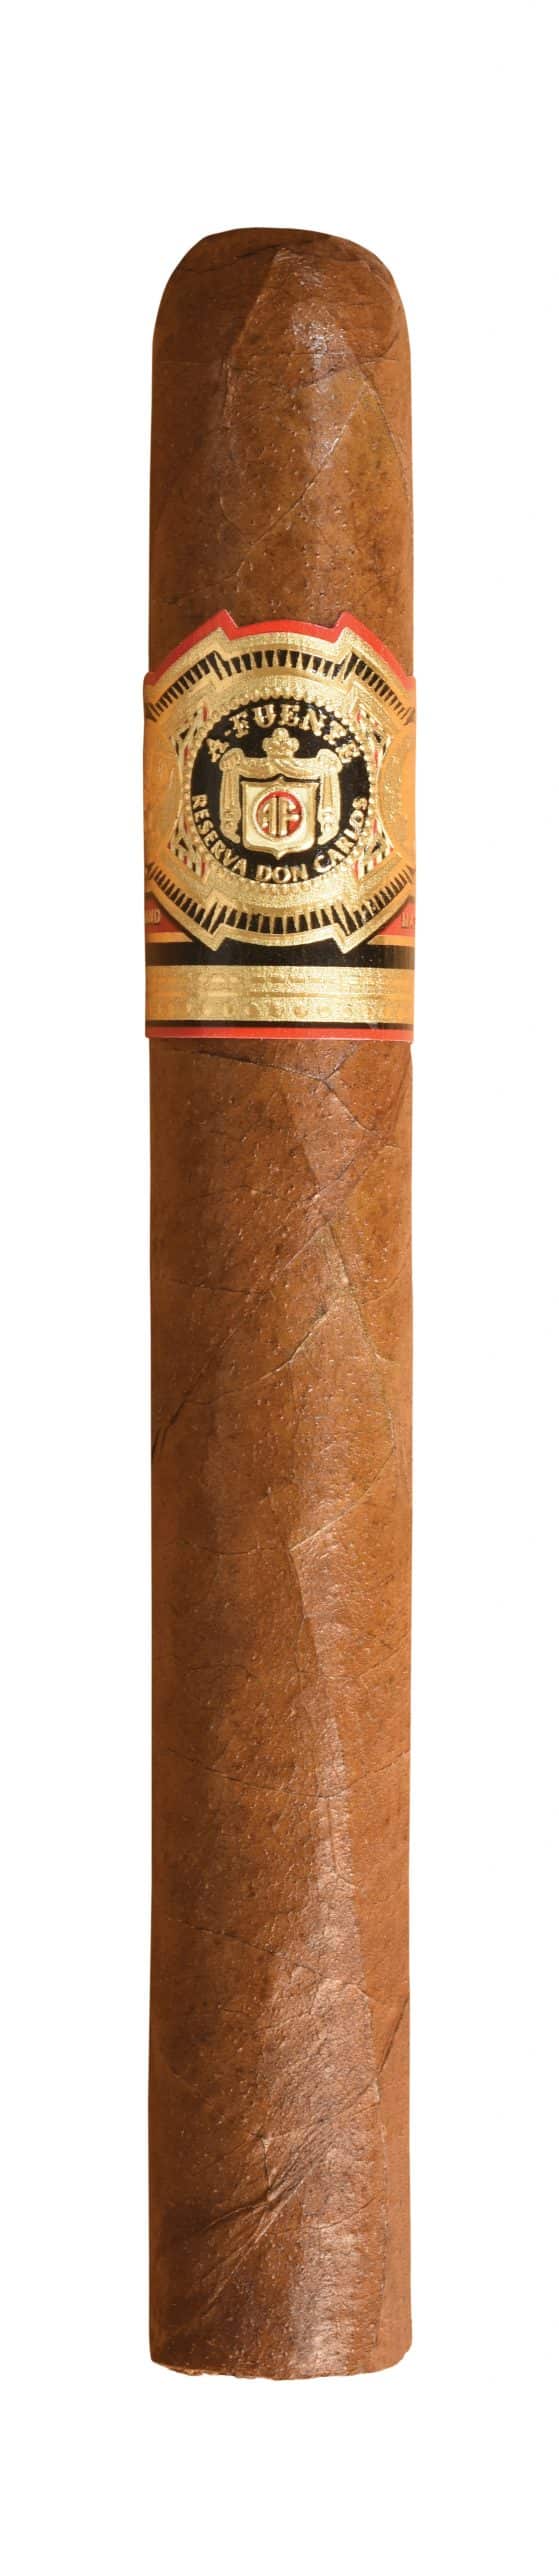 single arturo fuente don carlos presidente cigar